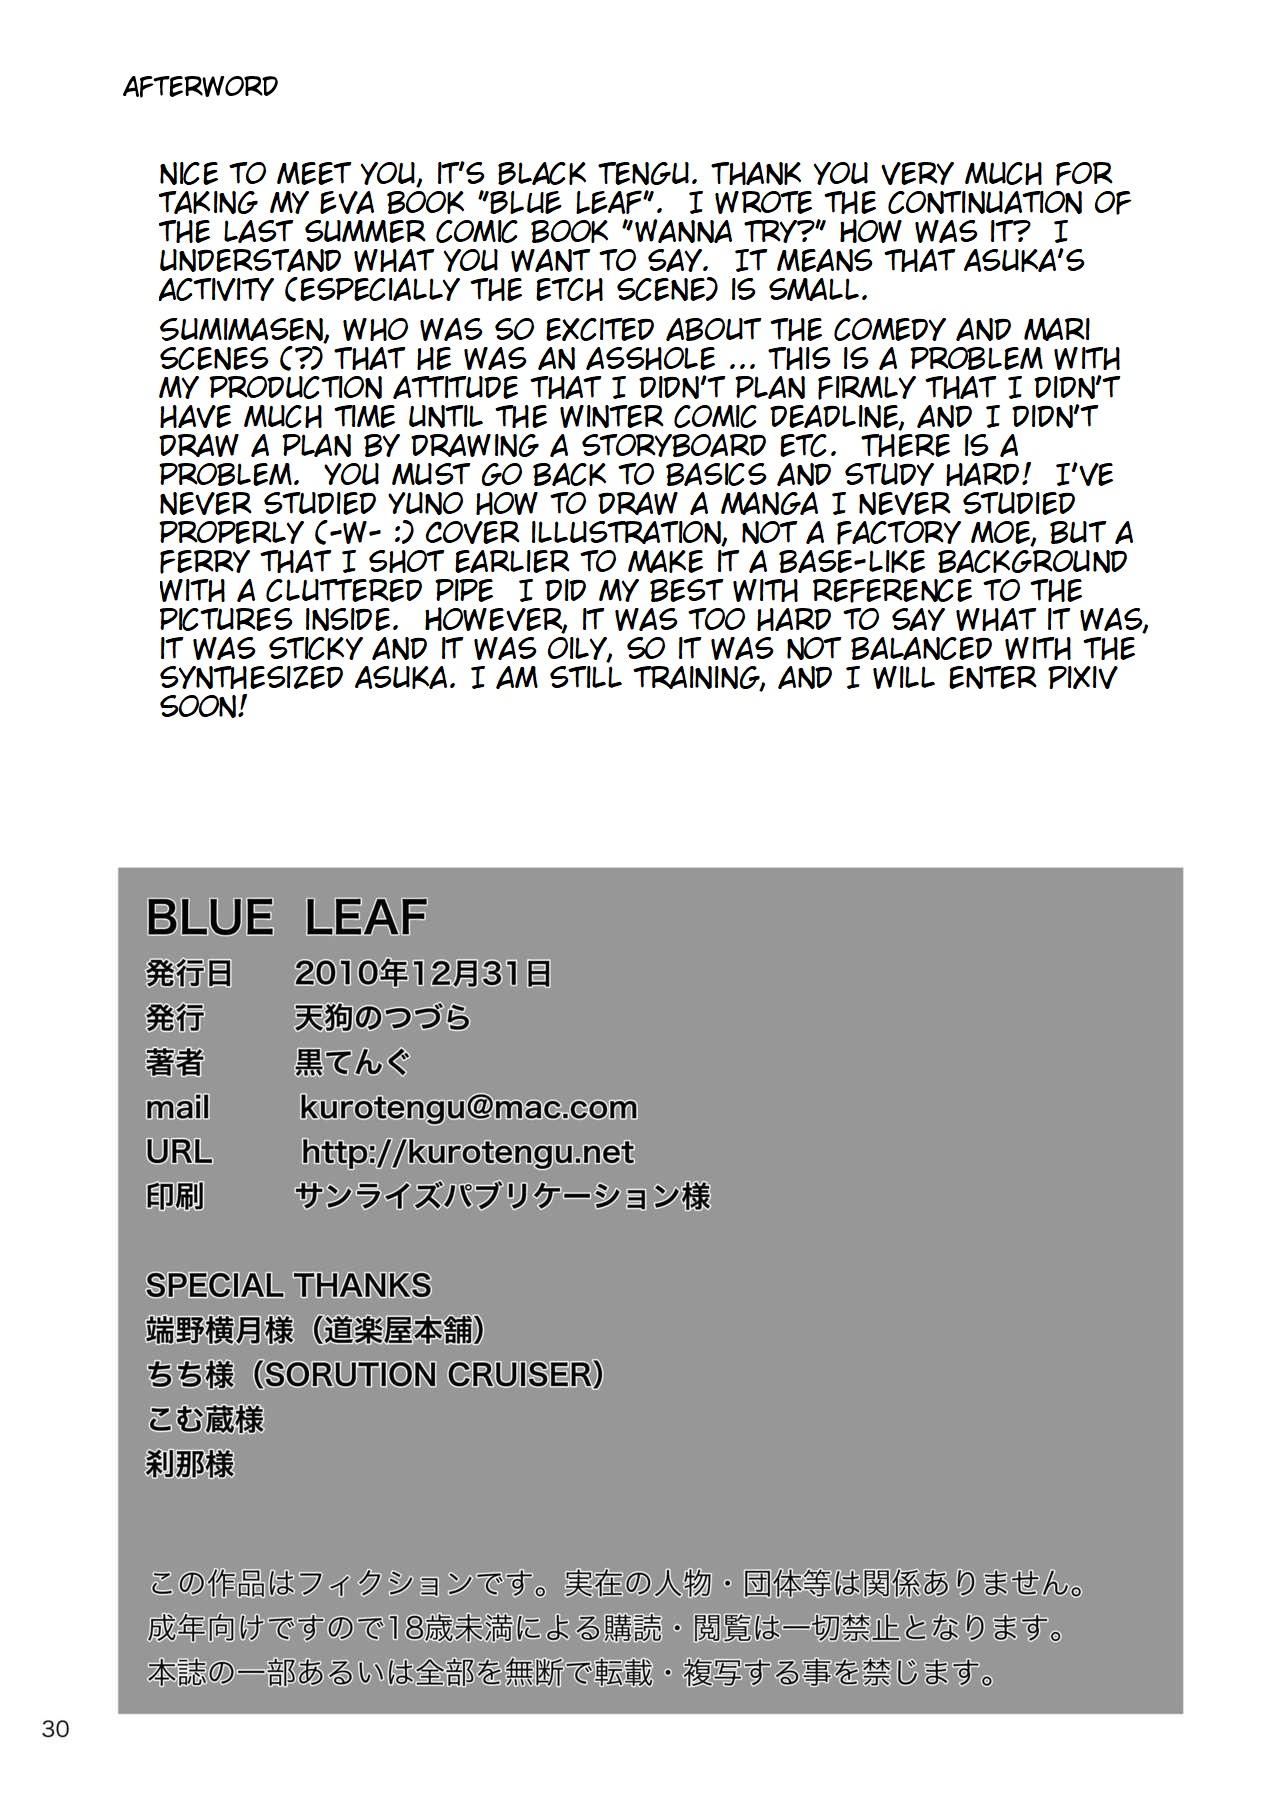 Wetpussy BLUE LEAF - Neon genesis evangelion Money Talks - Page 29